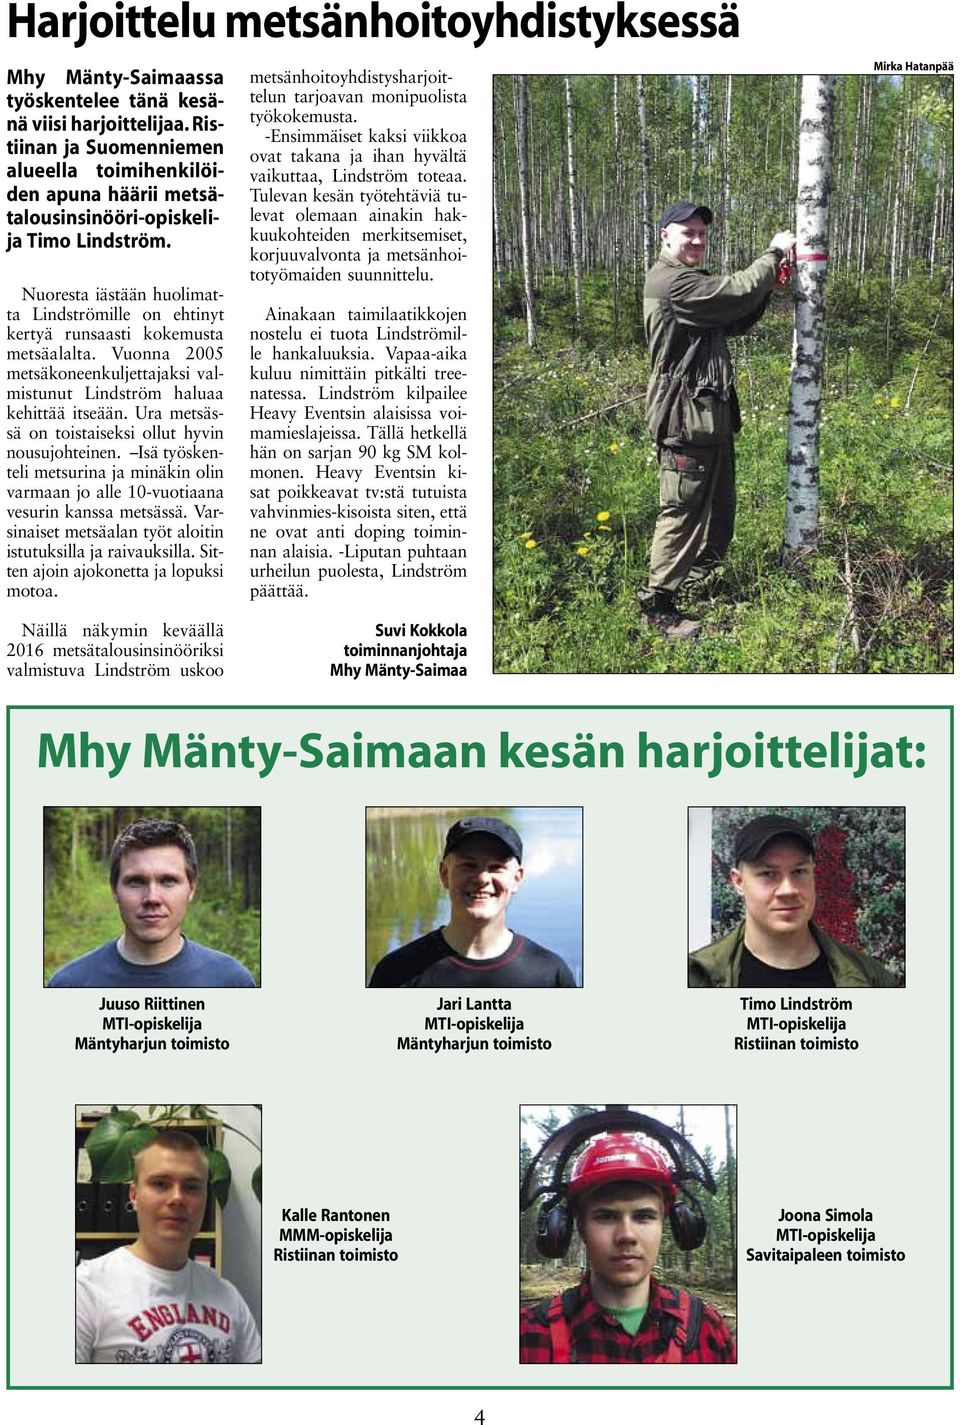 Nuoresta iästään huolimatta Lindströmille on ehtinyt kertyä runsaasti kokemusta metsäalalta. Vuonna 2005 metsäkoneenkuljettajaksi valmistunut Lindström haluaa kehittää itseään.